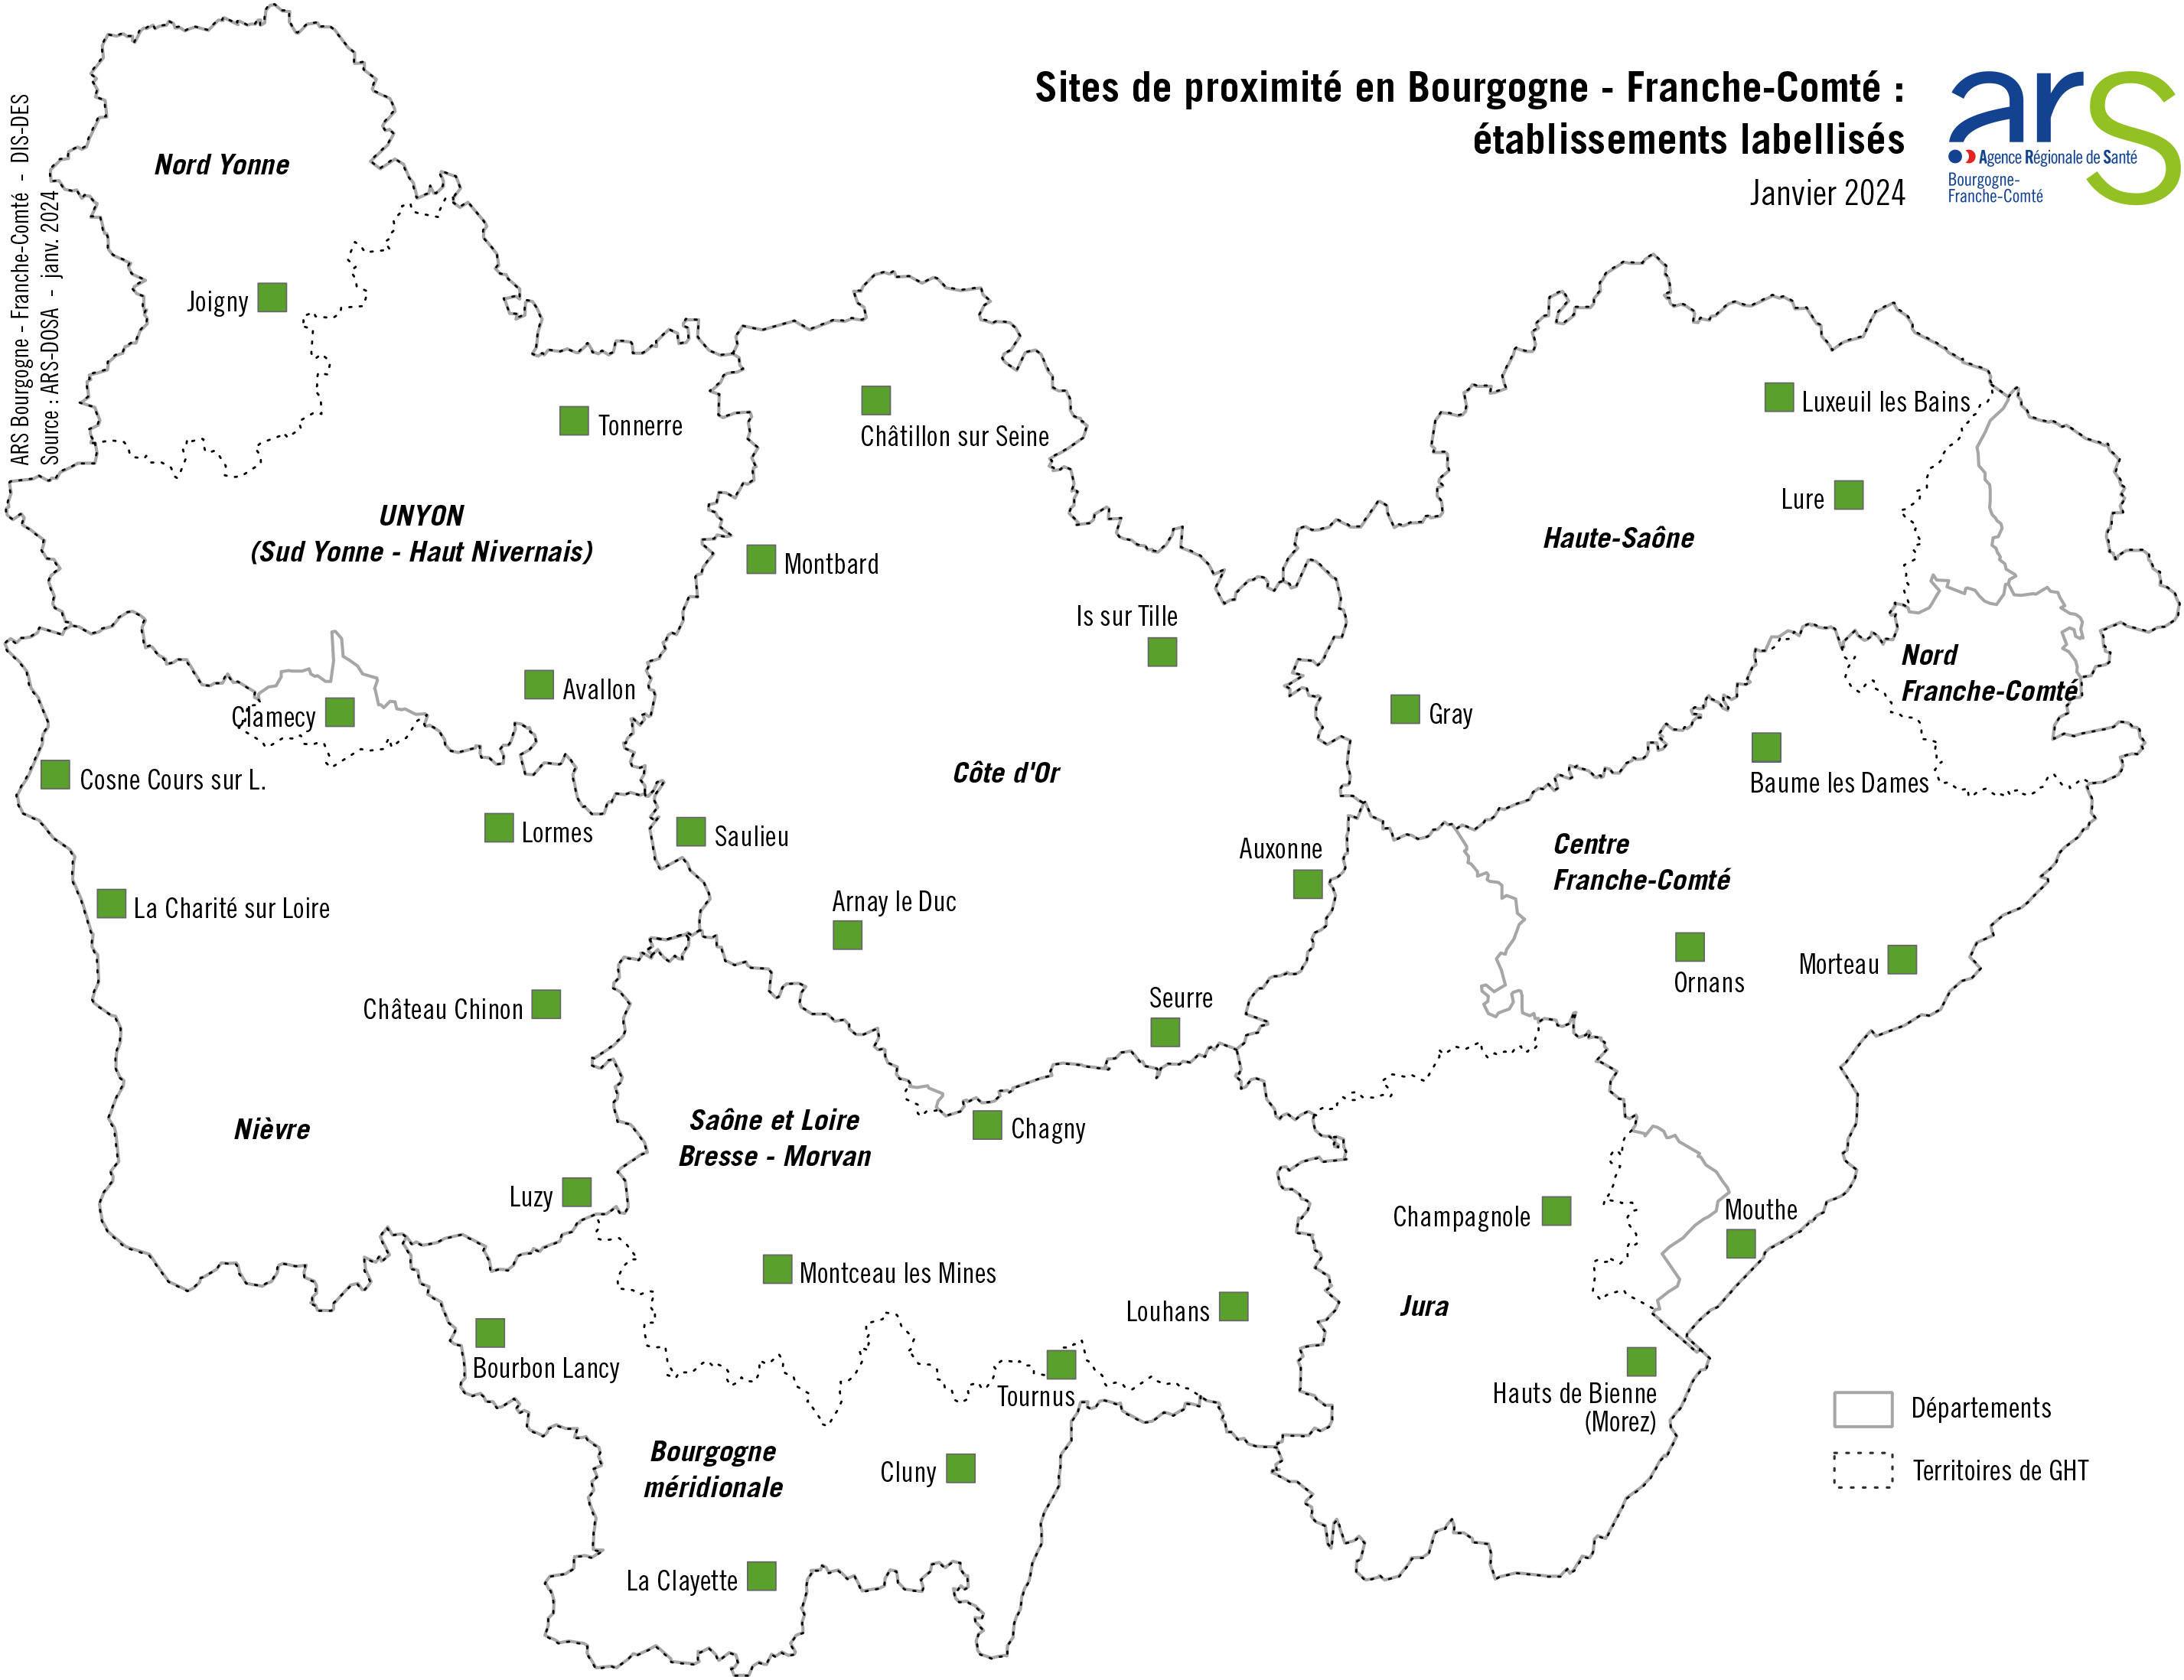 Hôpitaux de proximité labellisés en Bourgogne-Franche-Comté – voir description détaillée ci-après